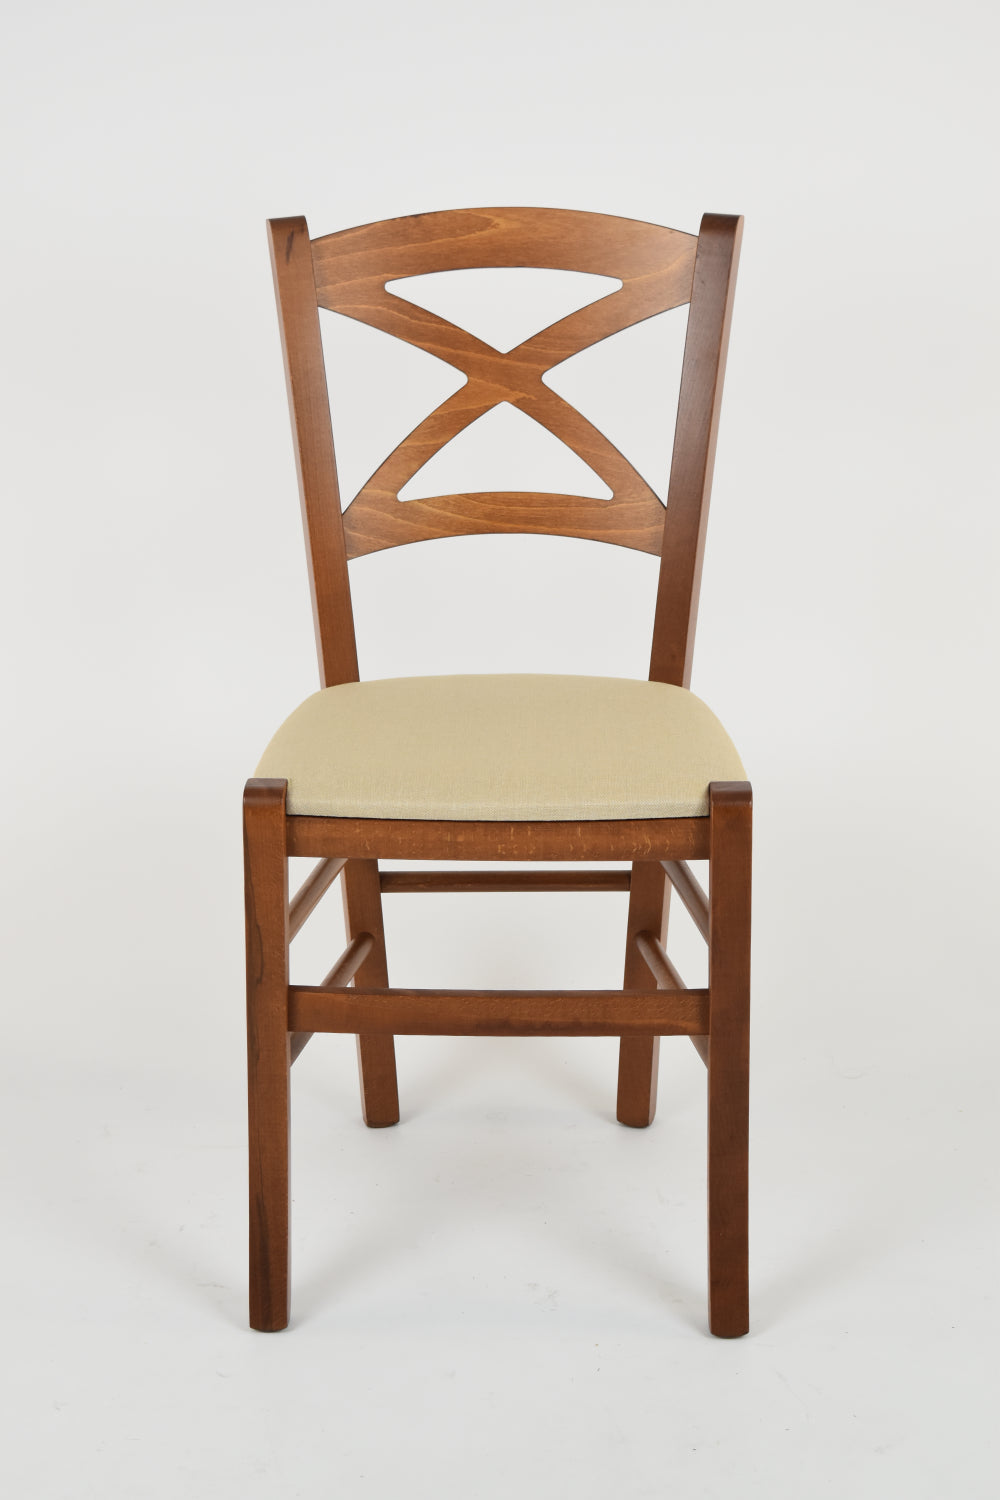 Tommychairs - Set 2 sillas de Cocina y Comedor Cross, Estructura en Madera de Haya Color Nuez Claro y Asiento tapizado en Tejido Color cáñamo